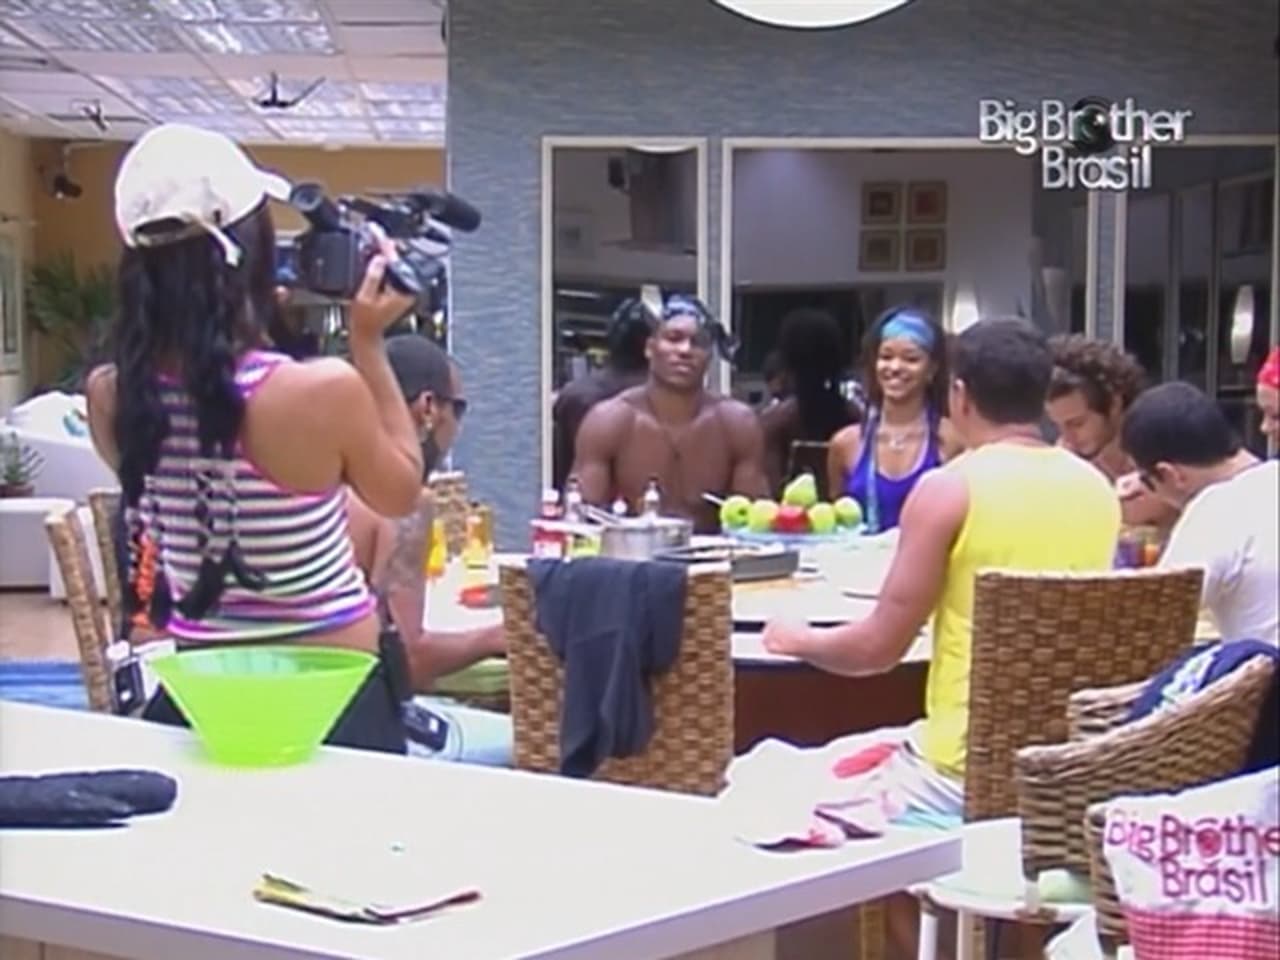 Big Brother Brasil - Season 3 Episode 16 : Episode 16